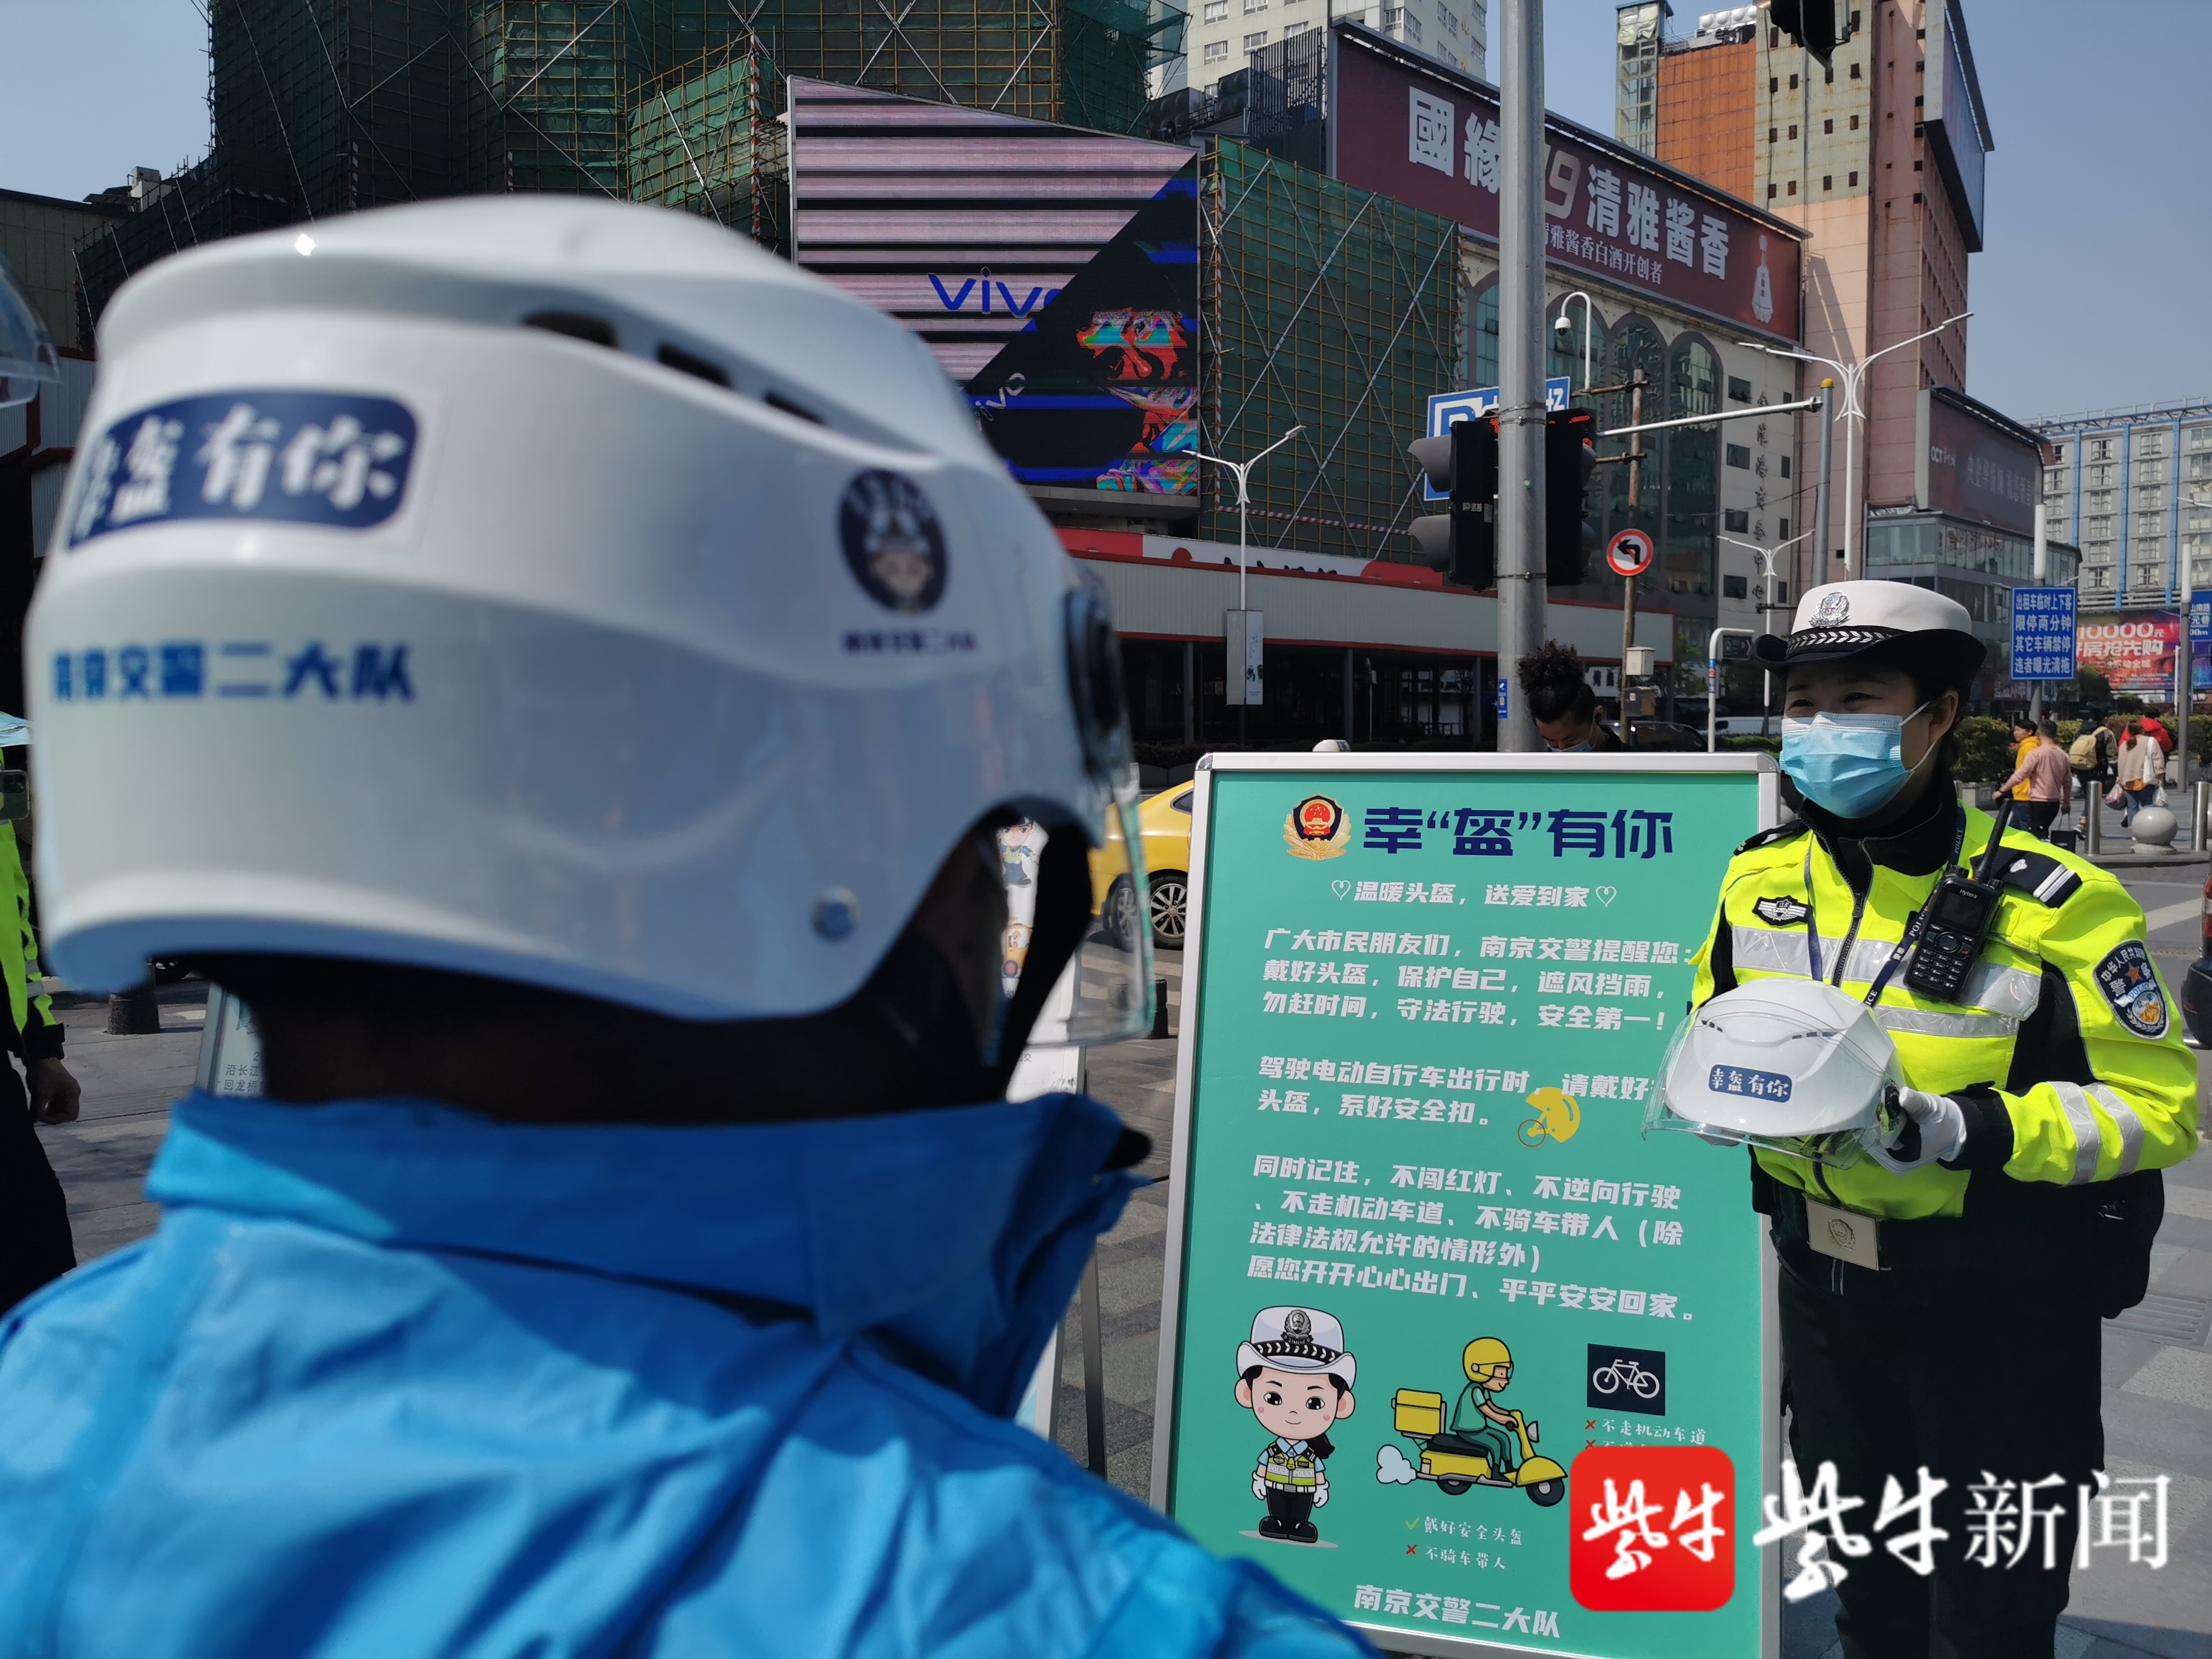 涉及电动自行车的死亡事故,95%以上未佩戴头盔,南京交警发通告鼓励